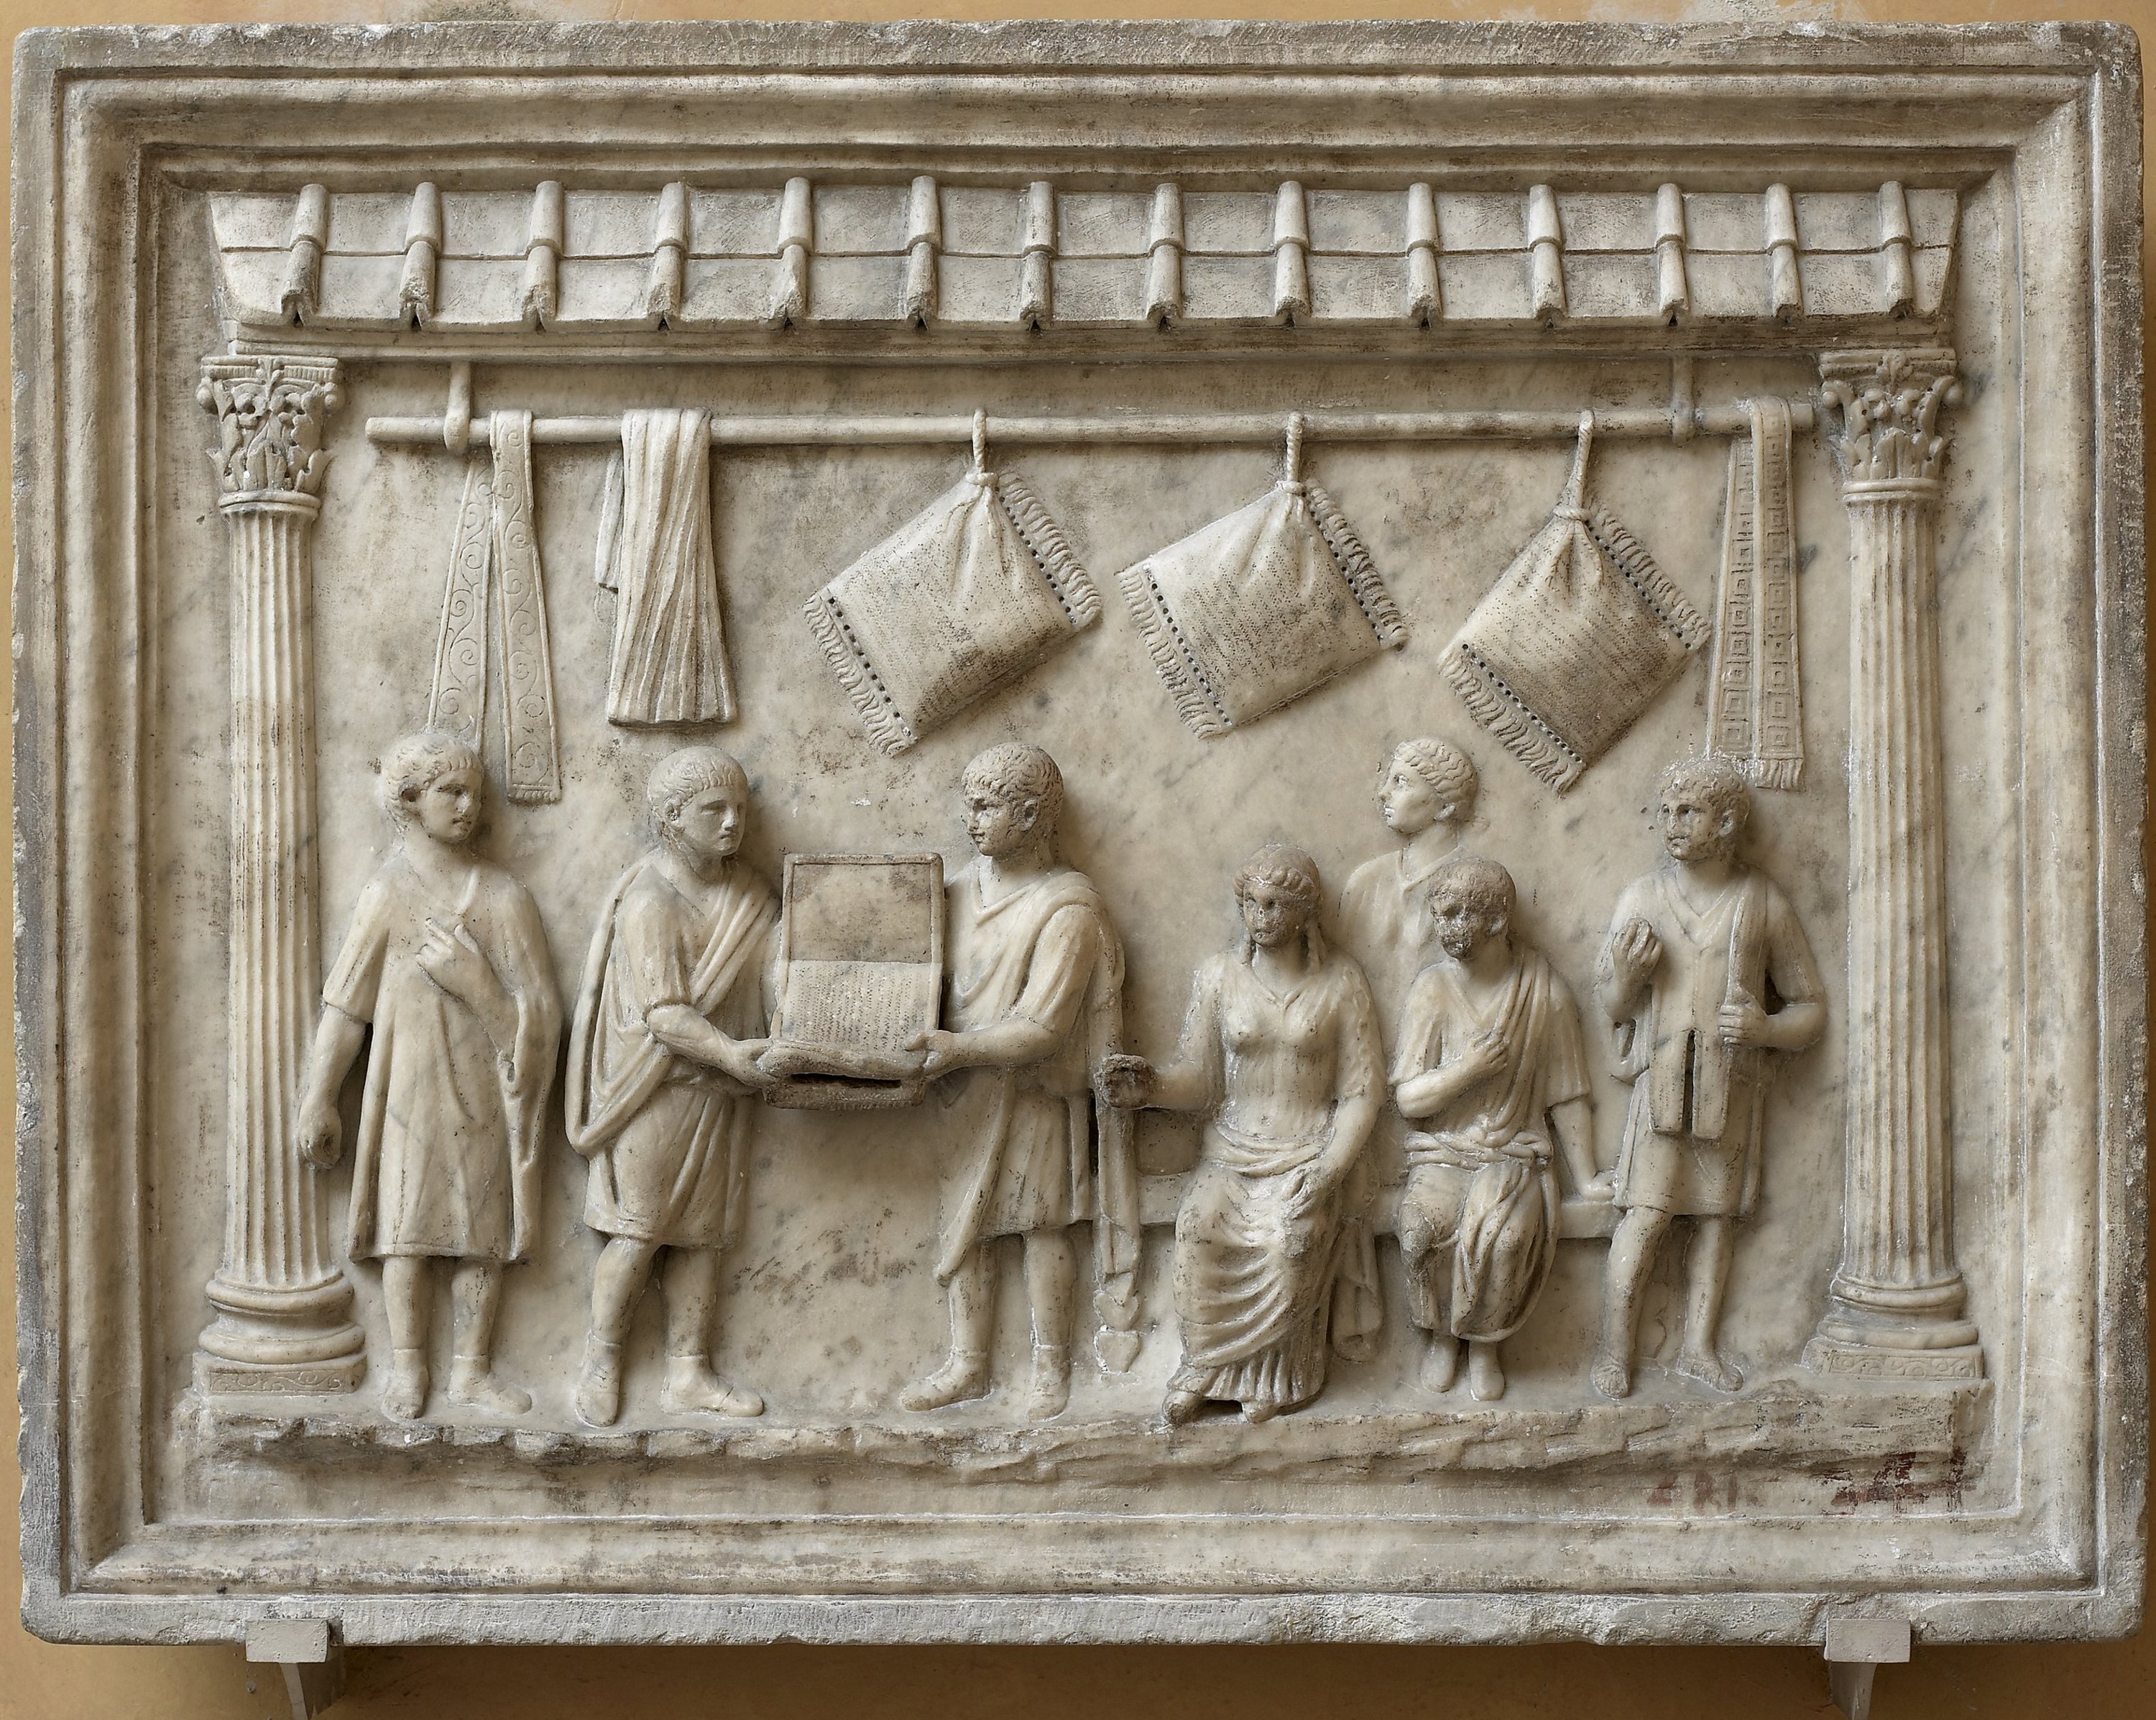 Rilievo con scena di vendita di cuscini - meta` I secolo d.C. (Fonte foto Galleria degli Uffizi)